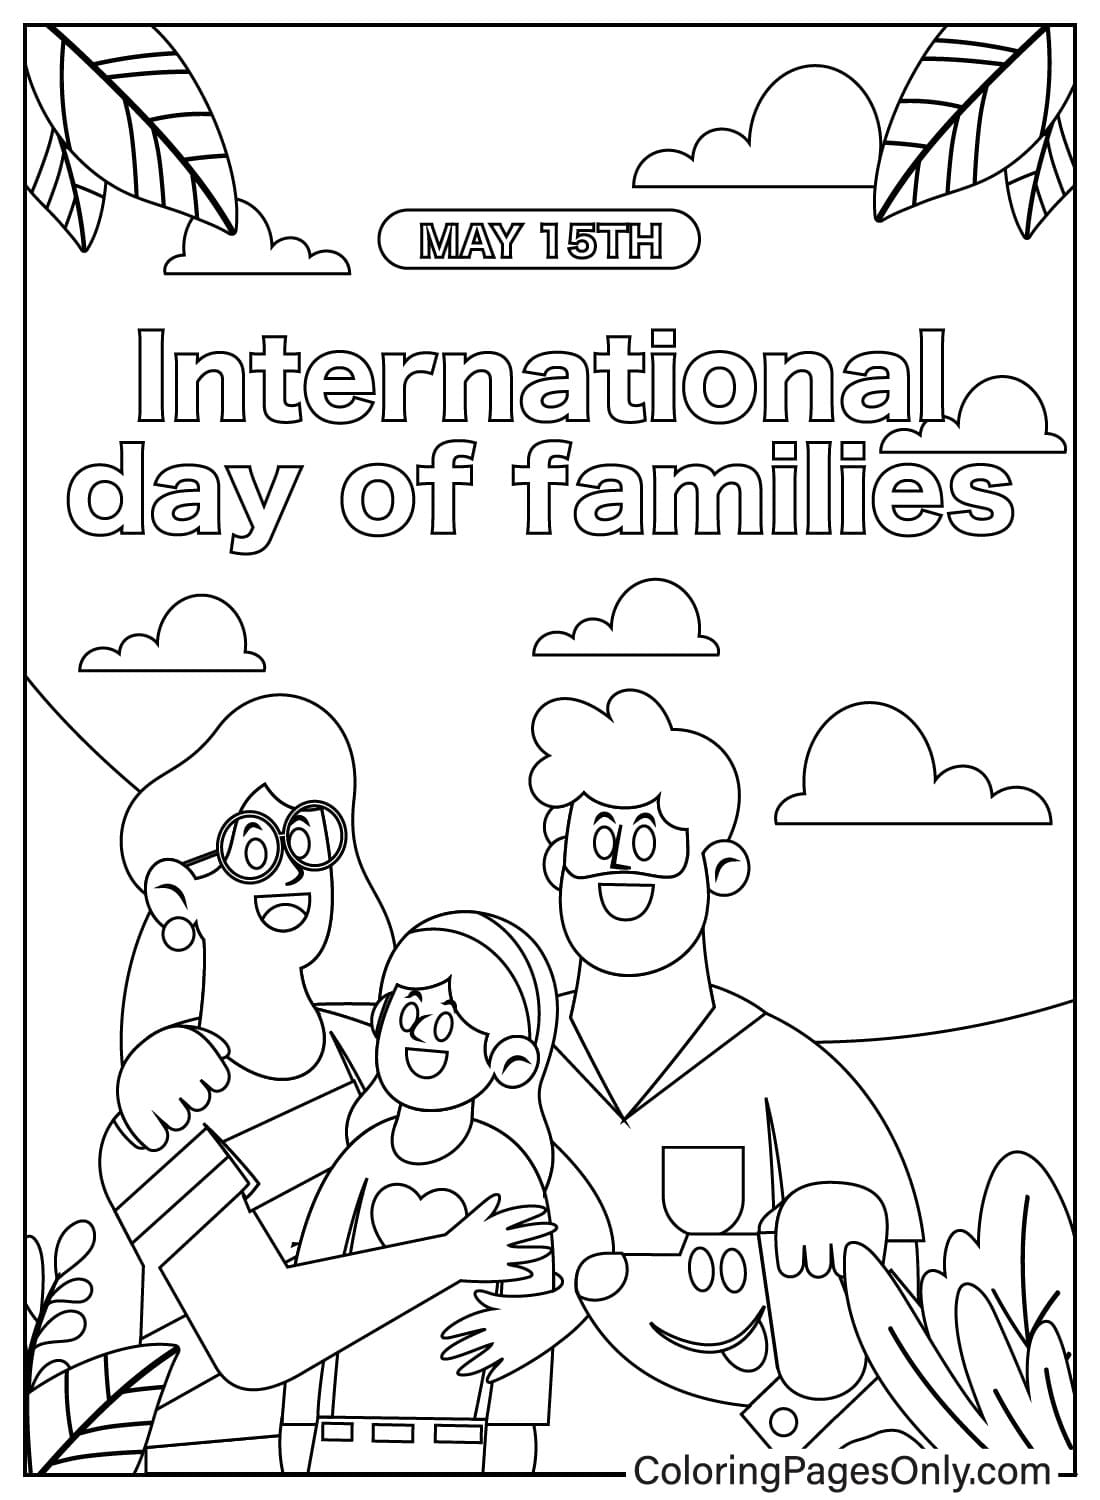 Malvorlage zum Internationalen Tag der Familie vom Familientag